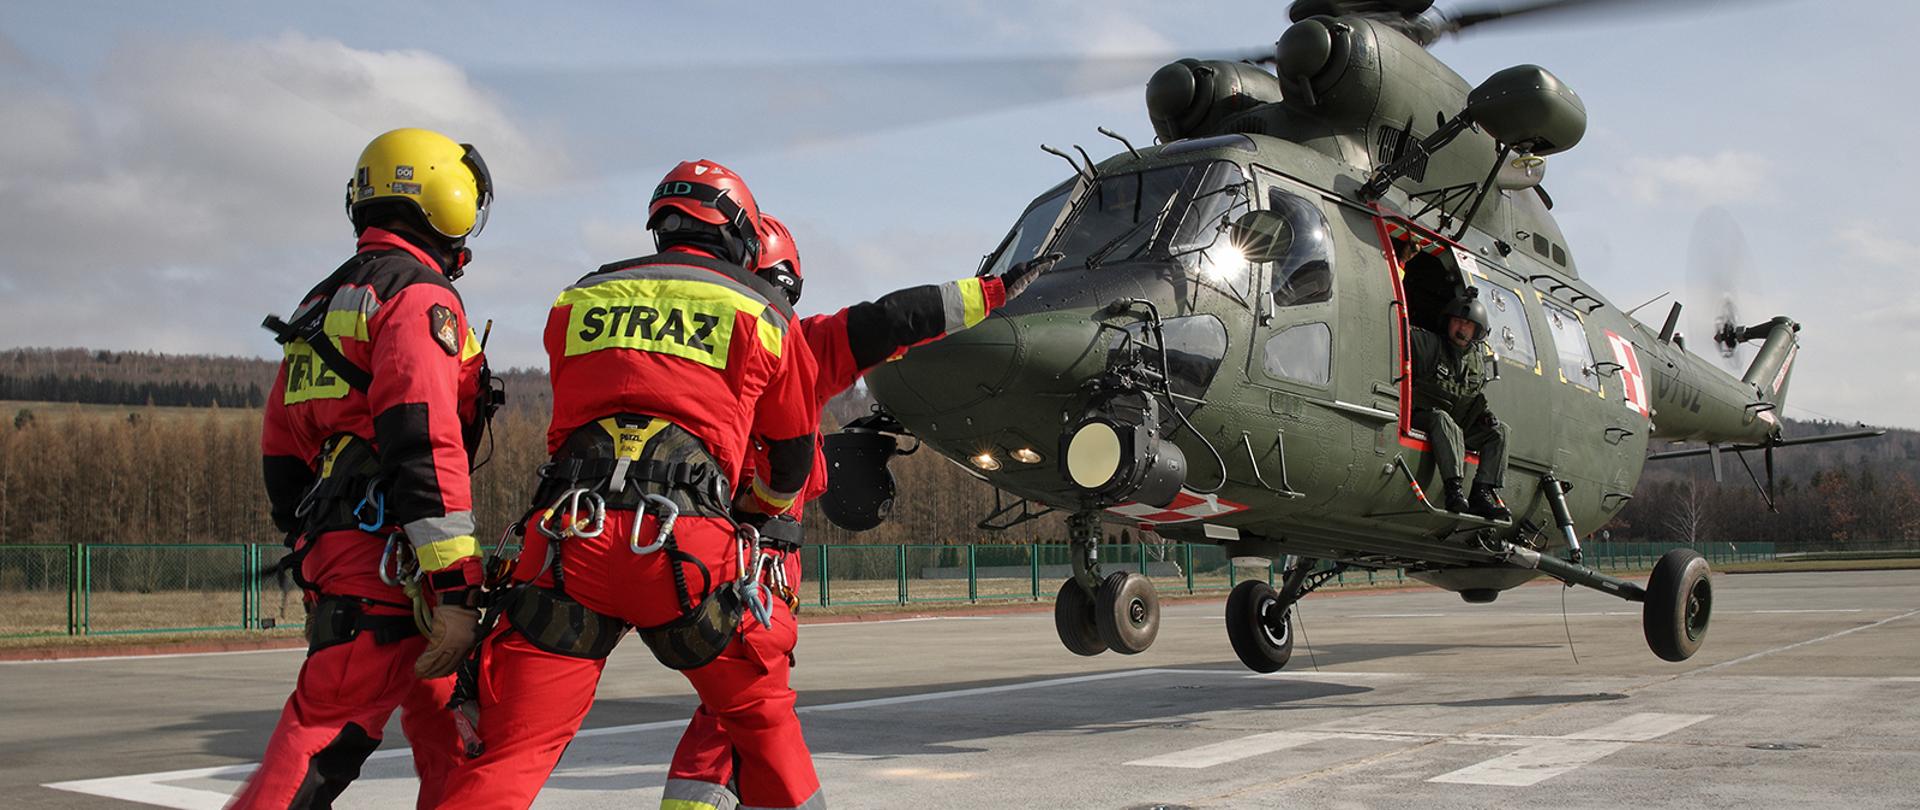 Zdjęcie przedstawia trzech strażaków wyposażonych w sprzęt ratownictwa wysokościowego oczekujących na wejście do lądującego helikoptera z którego wychylona jest jedna osoba.